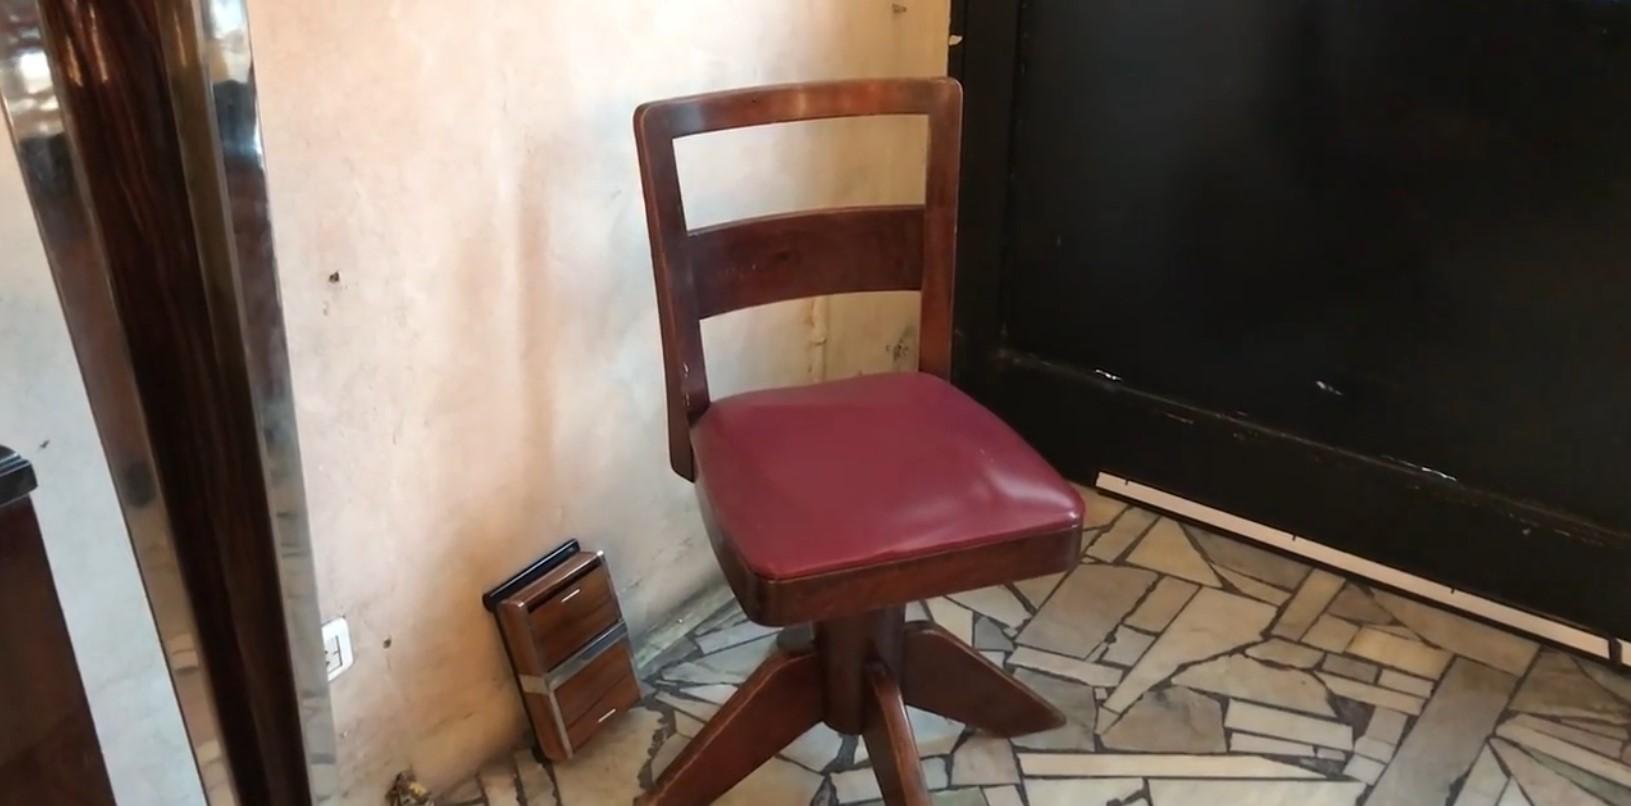 4 Stühle

Land: Italienisch
Wenn Sie einen Schreibtischstuhl suchen, der zu Ihrem Schreibtisch passt, haben wir das Richtige für Sie. 
Wir haben uns seit 1982 auf den Verkauf von Art Deco, Art Nouveau und Vintage spezialisiert und stehen Ihnen bei